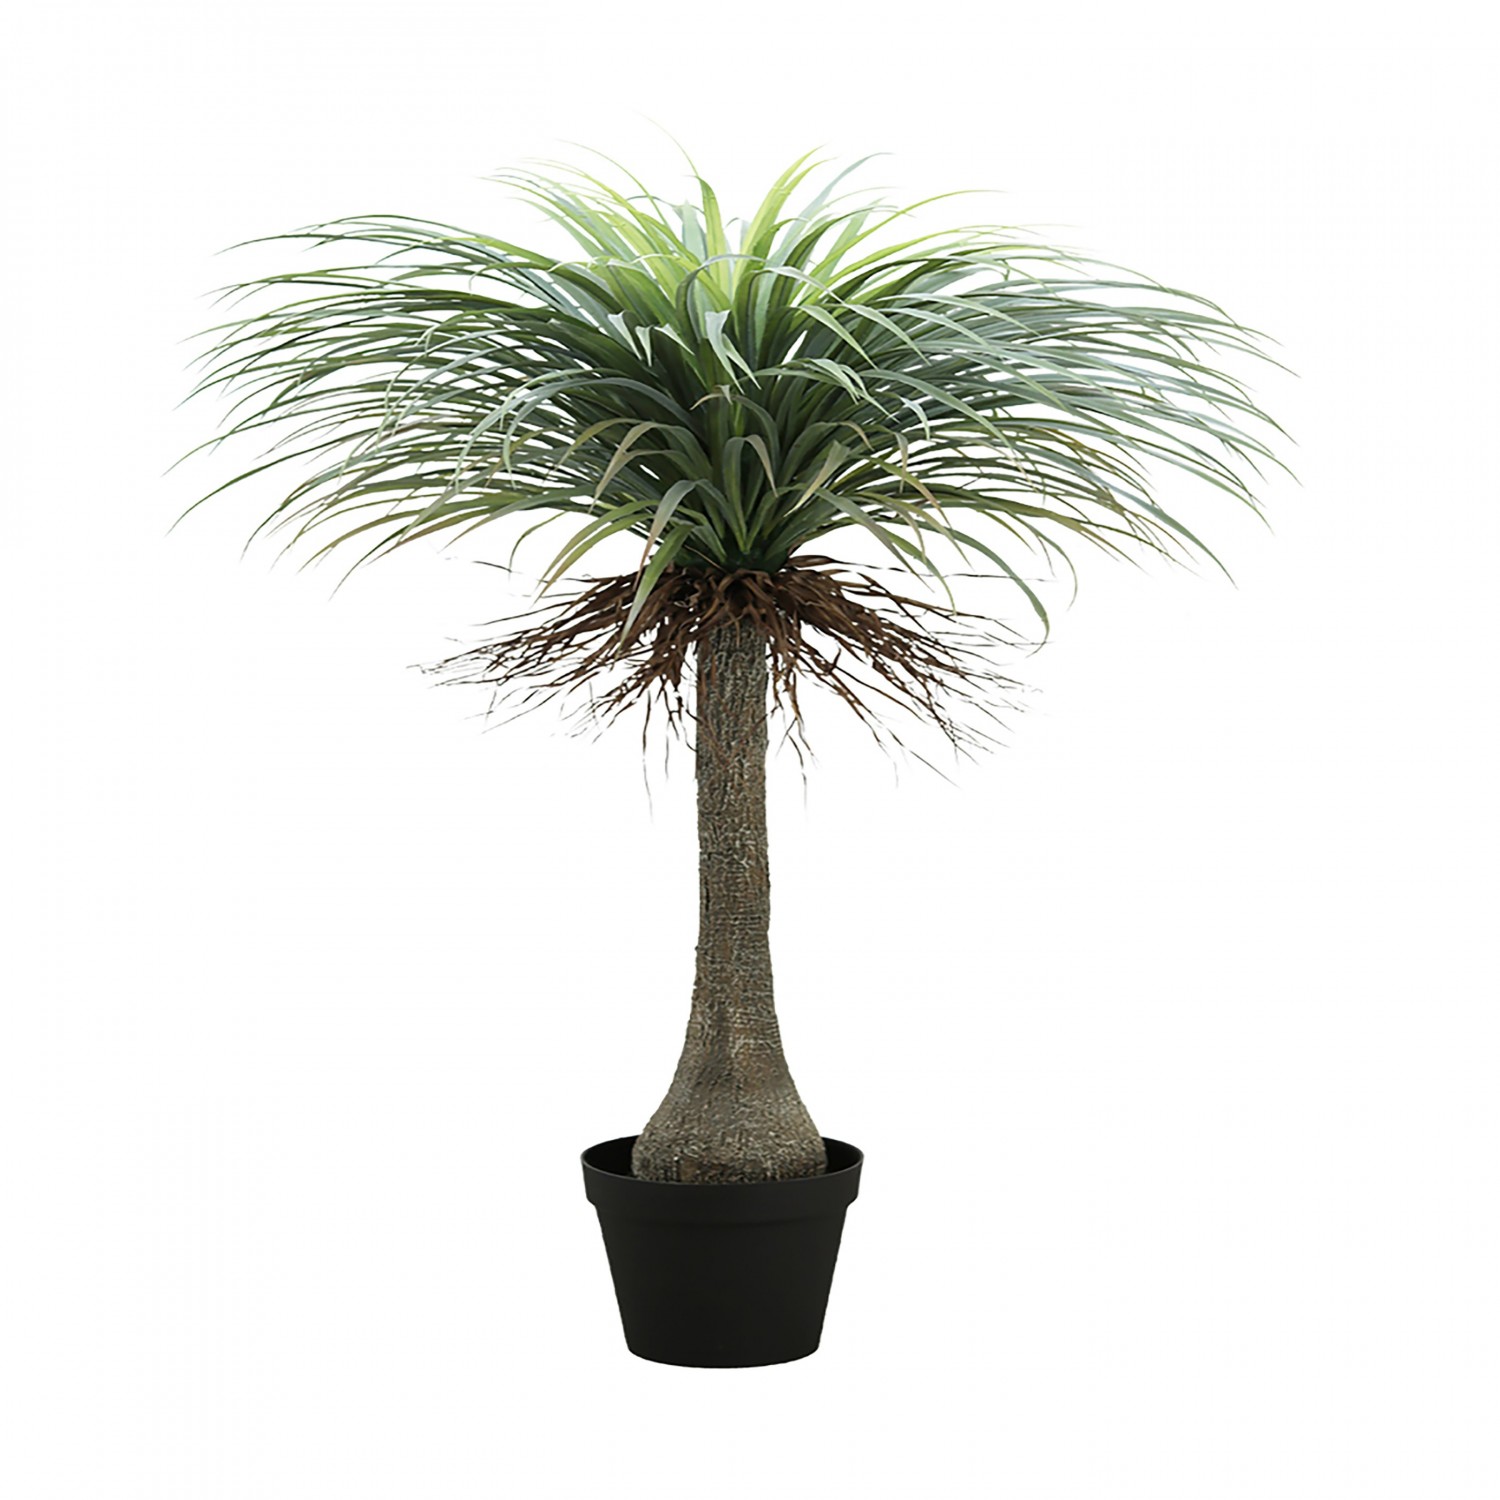 Yucca palmier feuillage artificiel 150cm